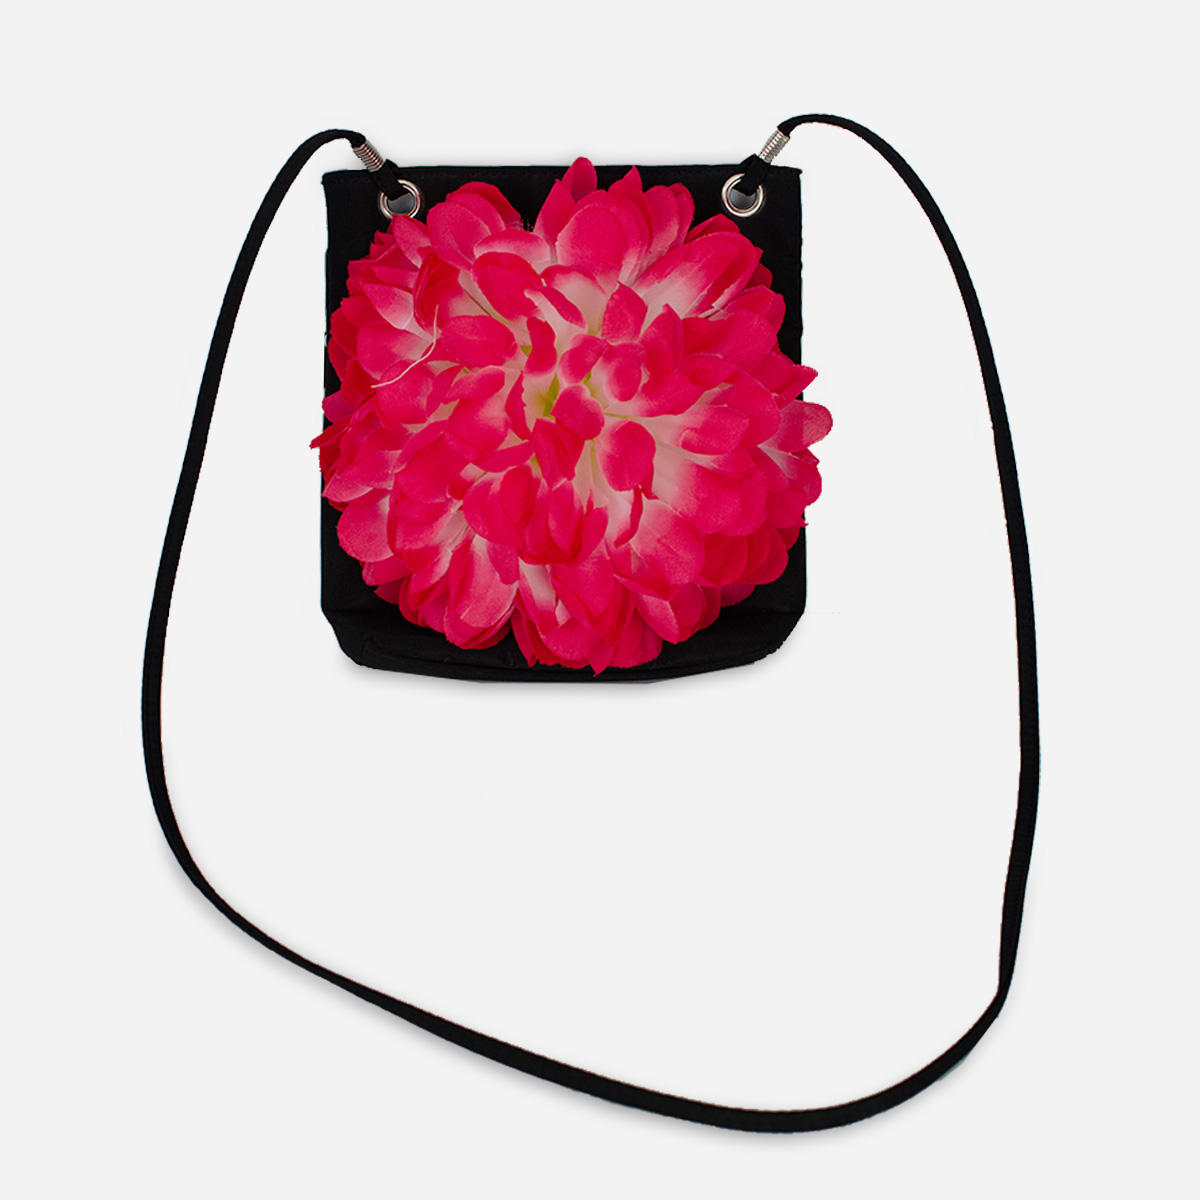 Pink flower purse, shoulder bag